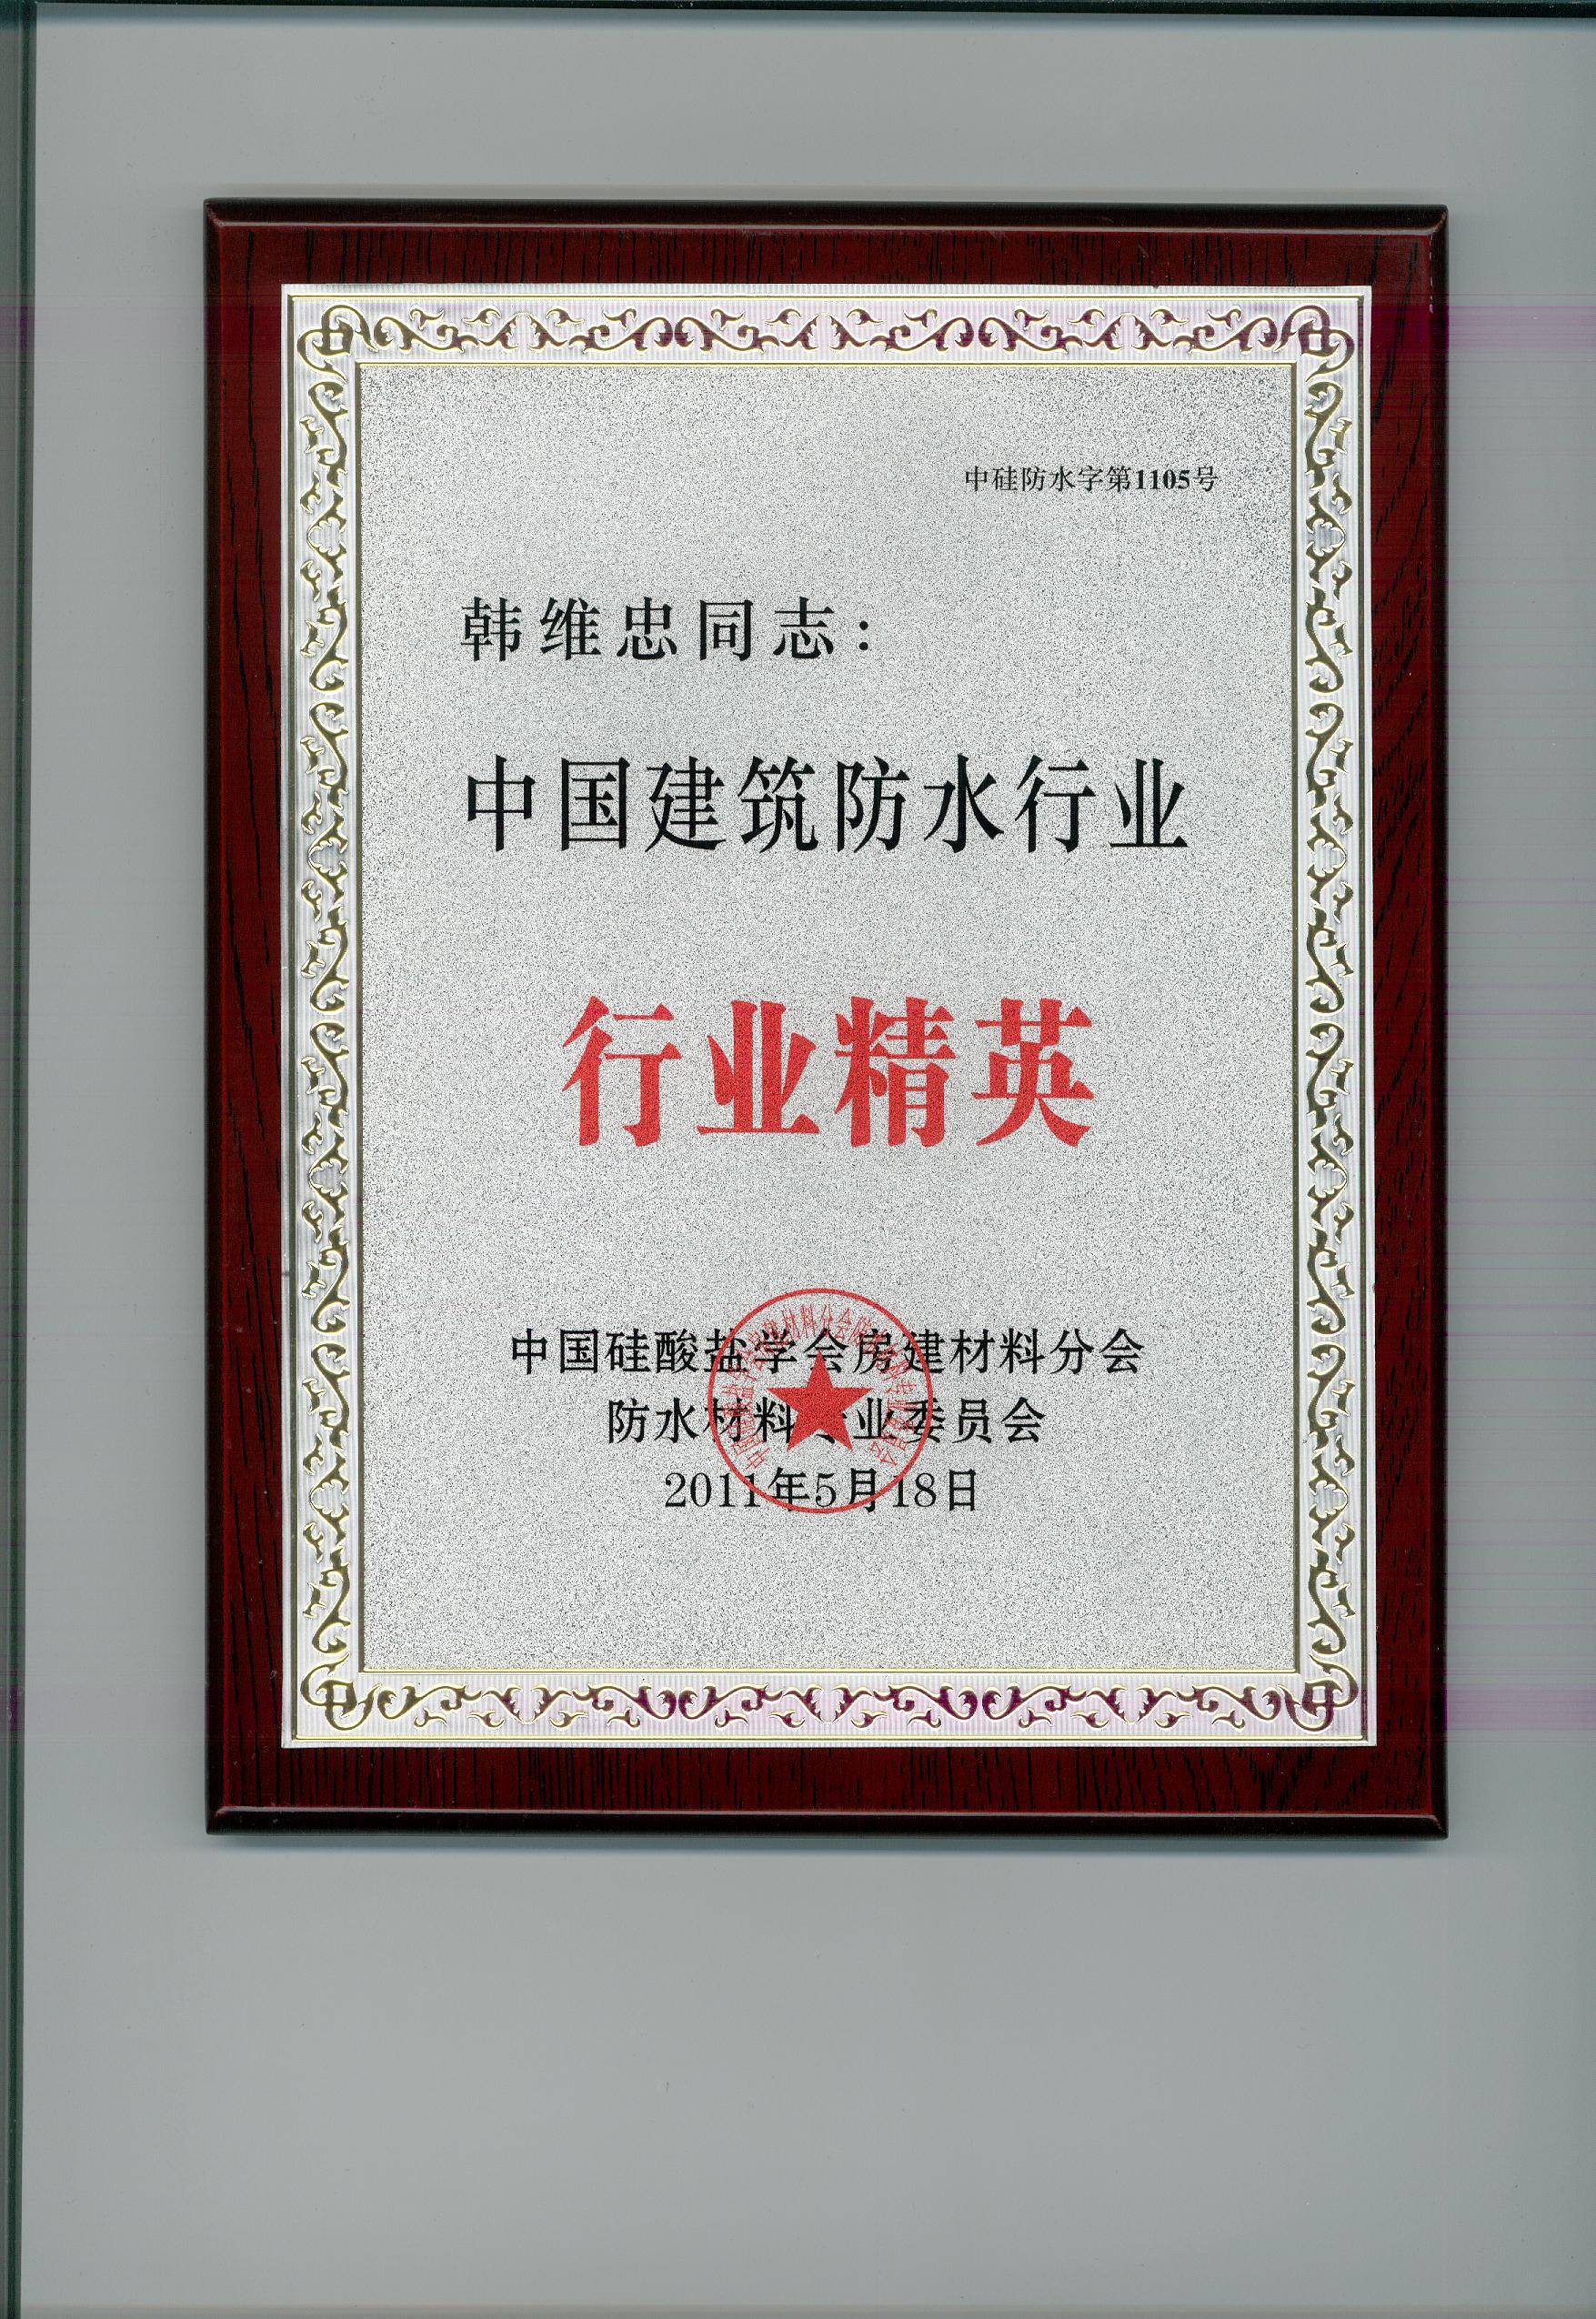 北京东方宝红建筑防水材料有限公司:防水资质与荣誉证书